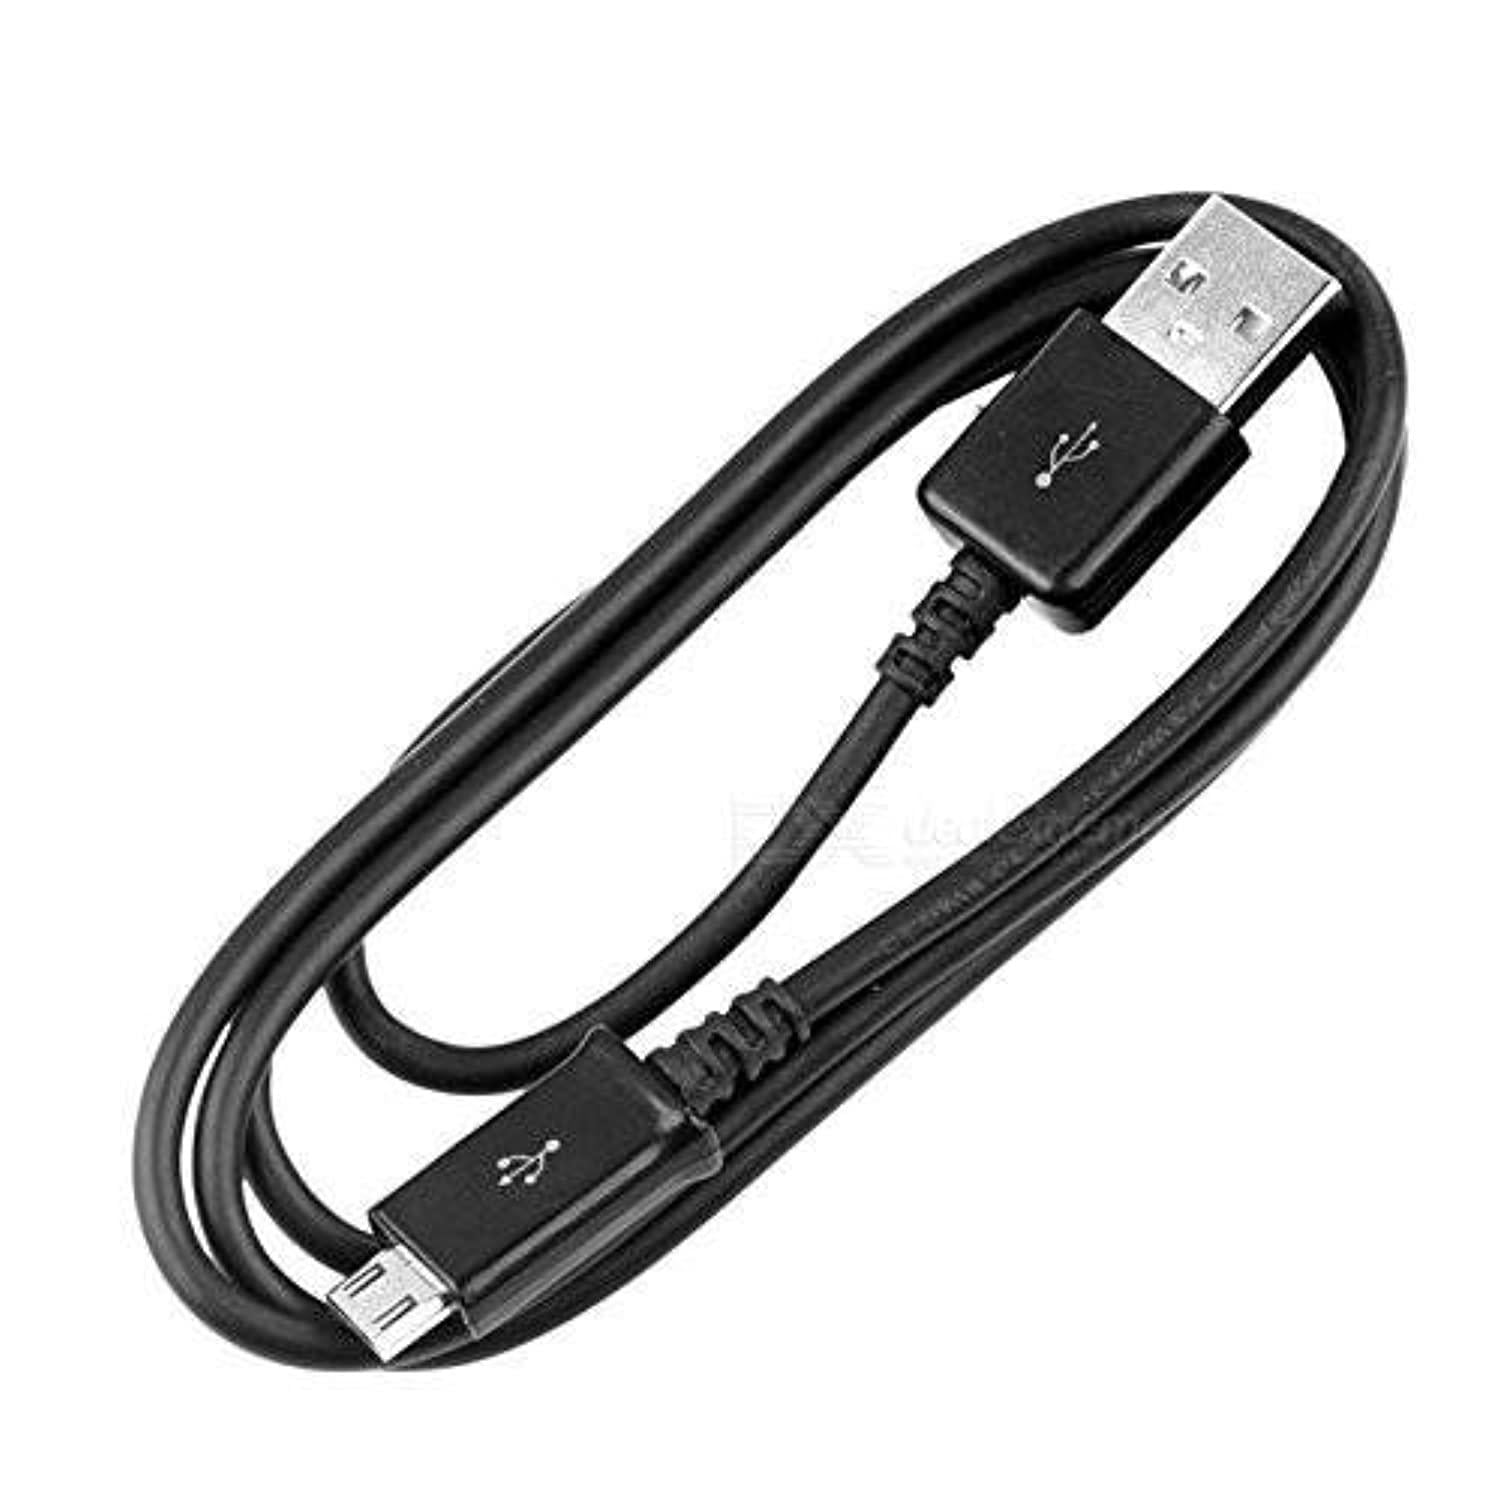 USB DC Cargador Cable De Datos Cable Para Panasonic Cámara Lumix DMC-ZS19 DMC-ZS35 approx. 0.91 m 3 ft 